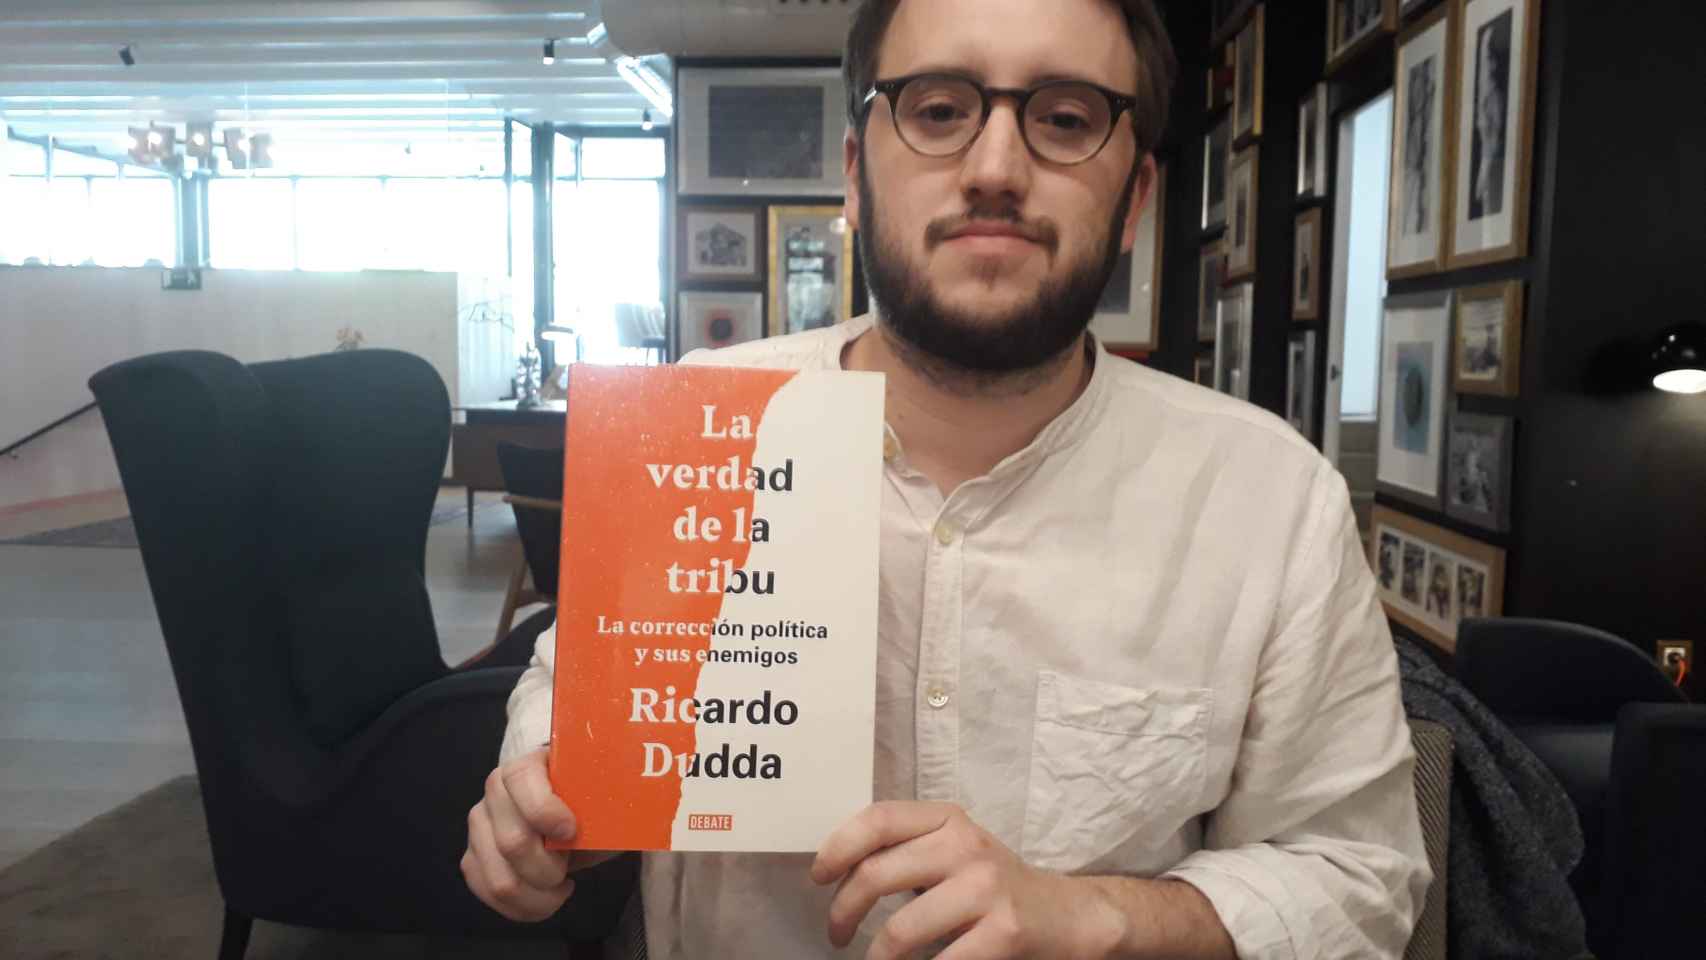 Ricardo Dudda (Madrid, 1992) es periodista de Letras Libres. Acaba de publicar su libro La verdad de la tribu